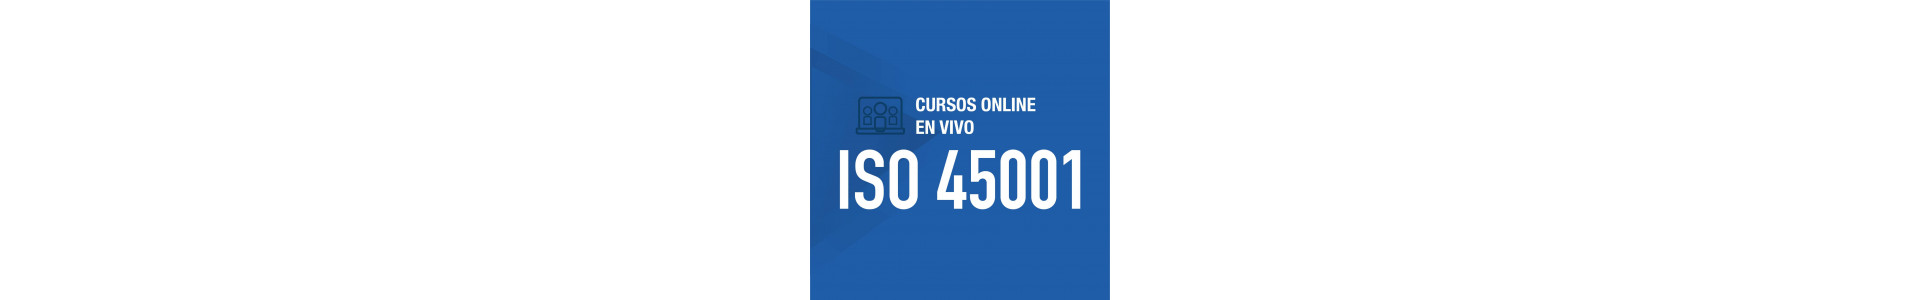 Cursos online | ISO 45001